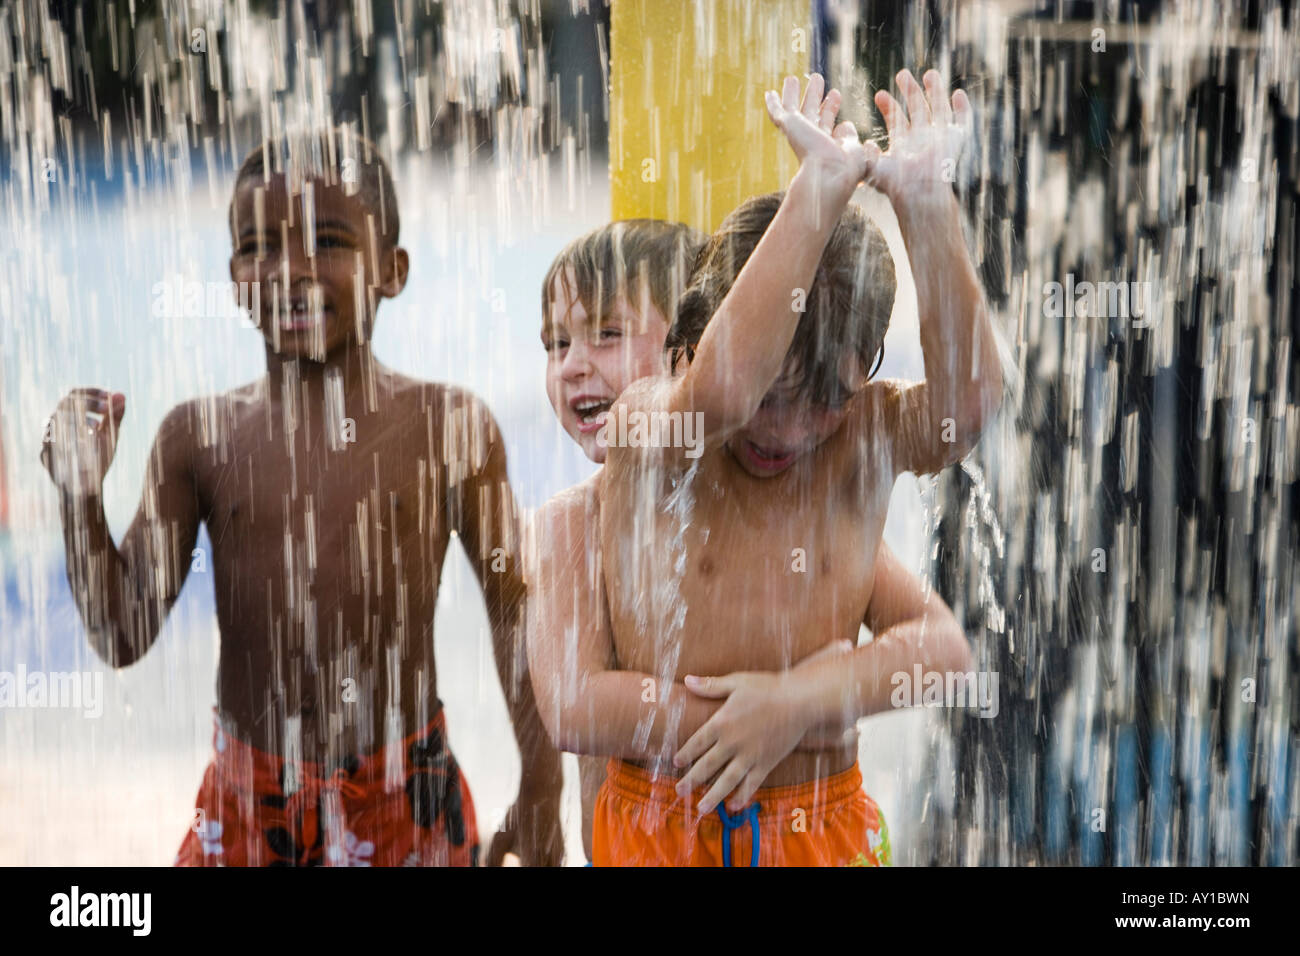 Jungs stehen zusammen unter der Dusche Stockfotografie - Alamy